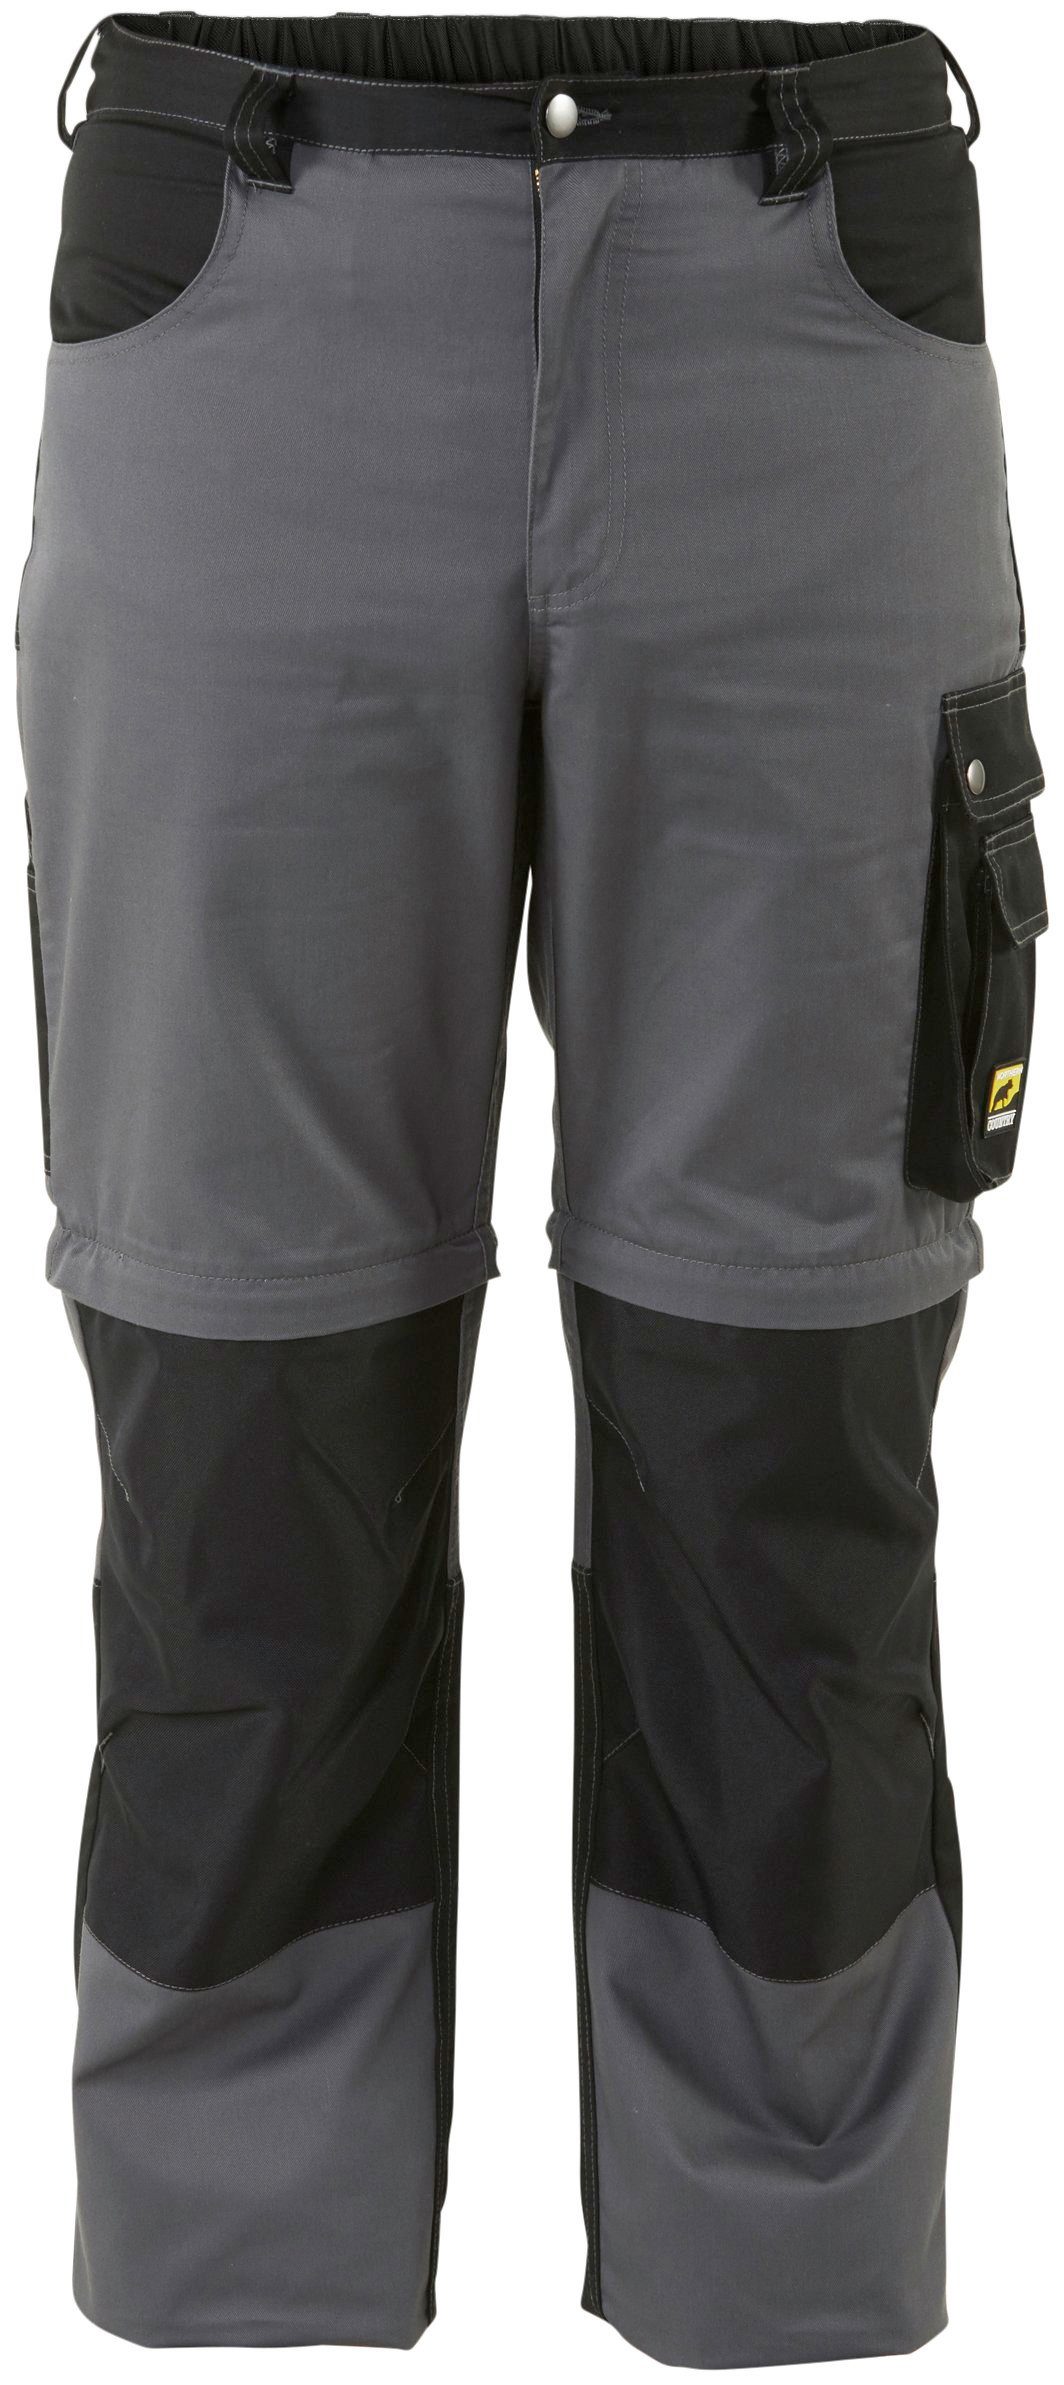 Northern Country Arbeitshose Worker Kniebereich, Zipp-off lange einem in möglich, 8 Beinverlängerung Shorts Arbeitshose und Funktion: mit (verstärkter Taschen)